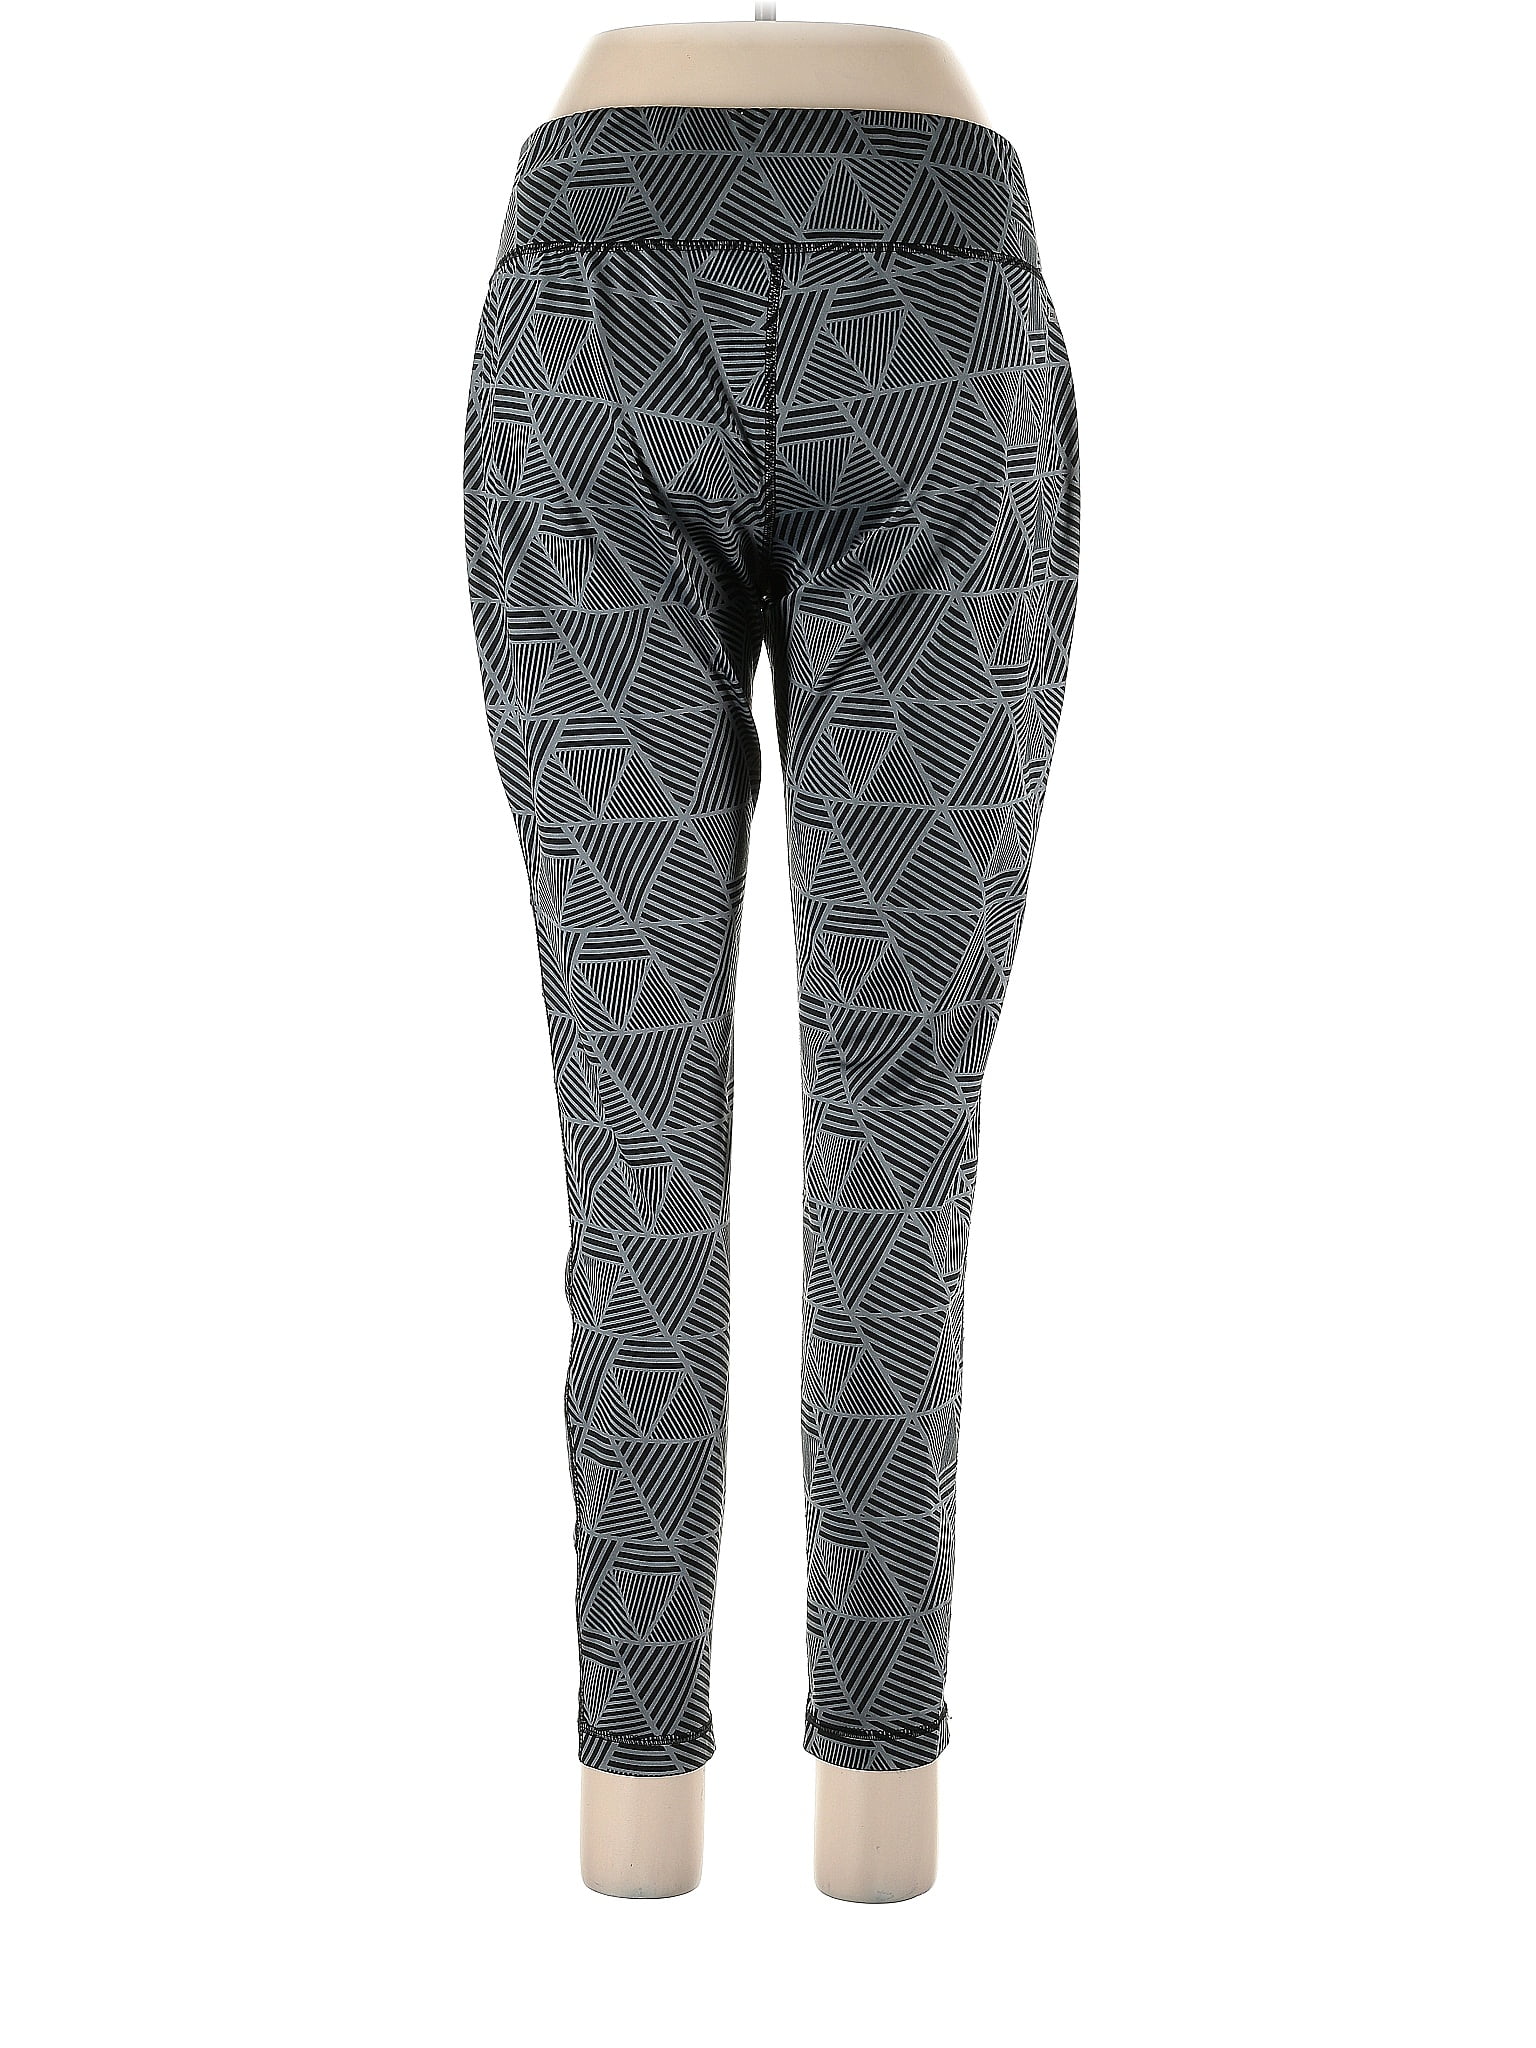 Danskin Solid Black Yoga Pants Size 12 - 14 - 31% off